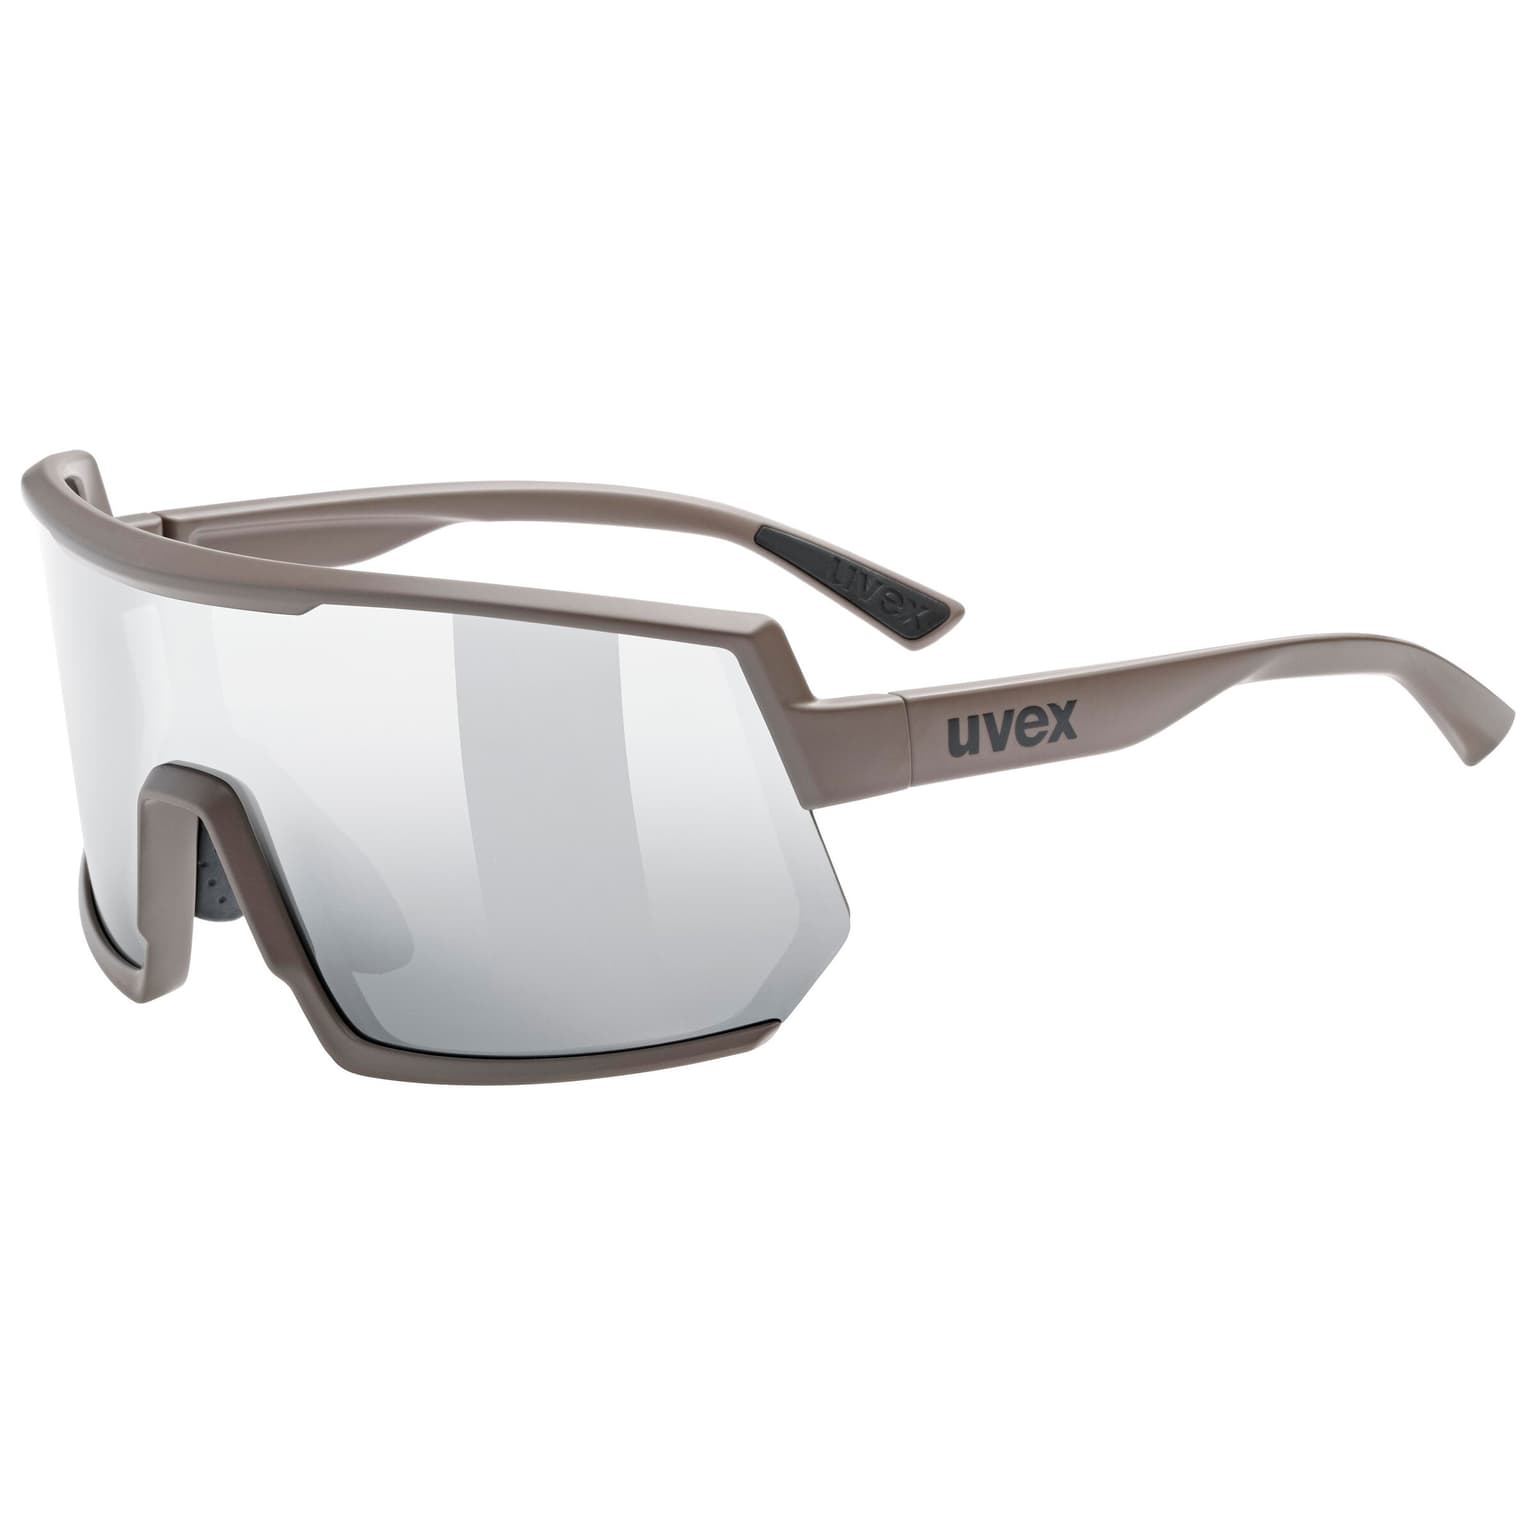 Uvex Uvex Allround Sportbrille grigio-chiaro 1